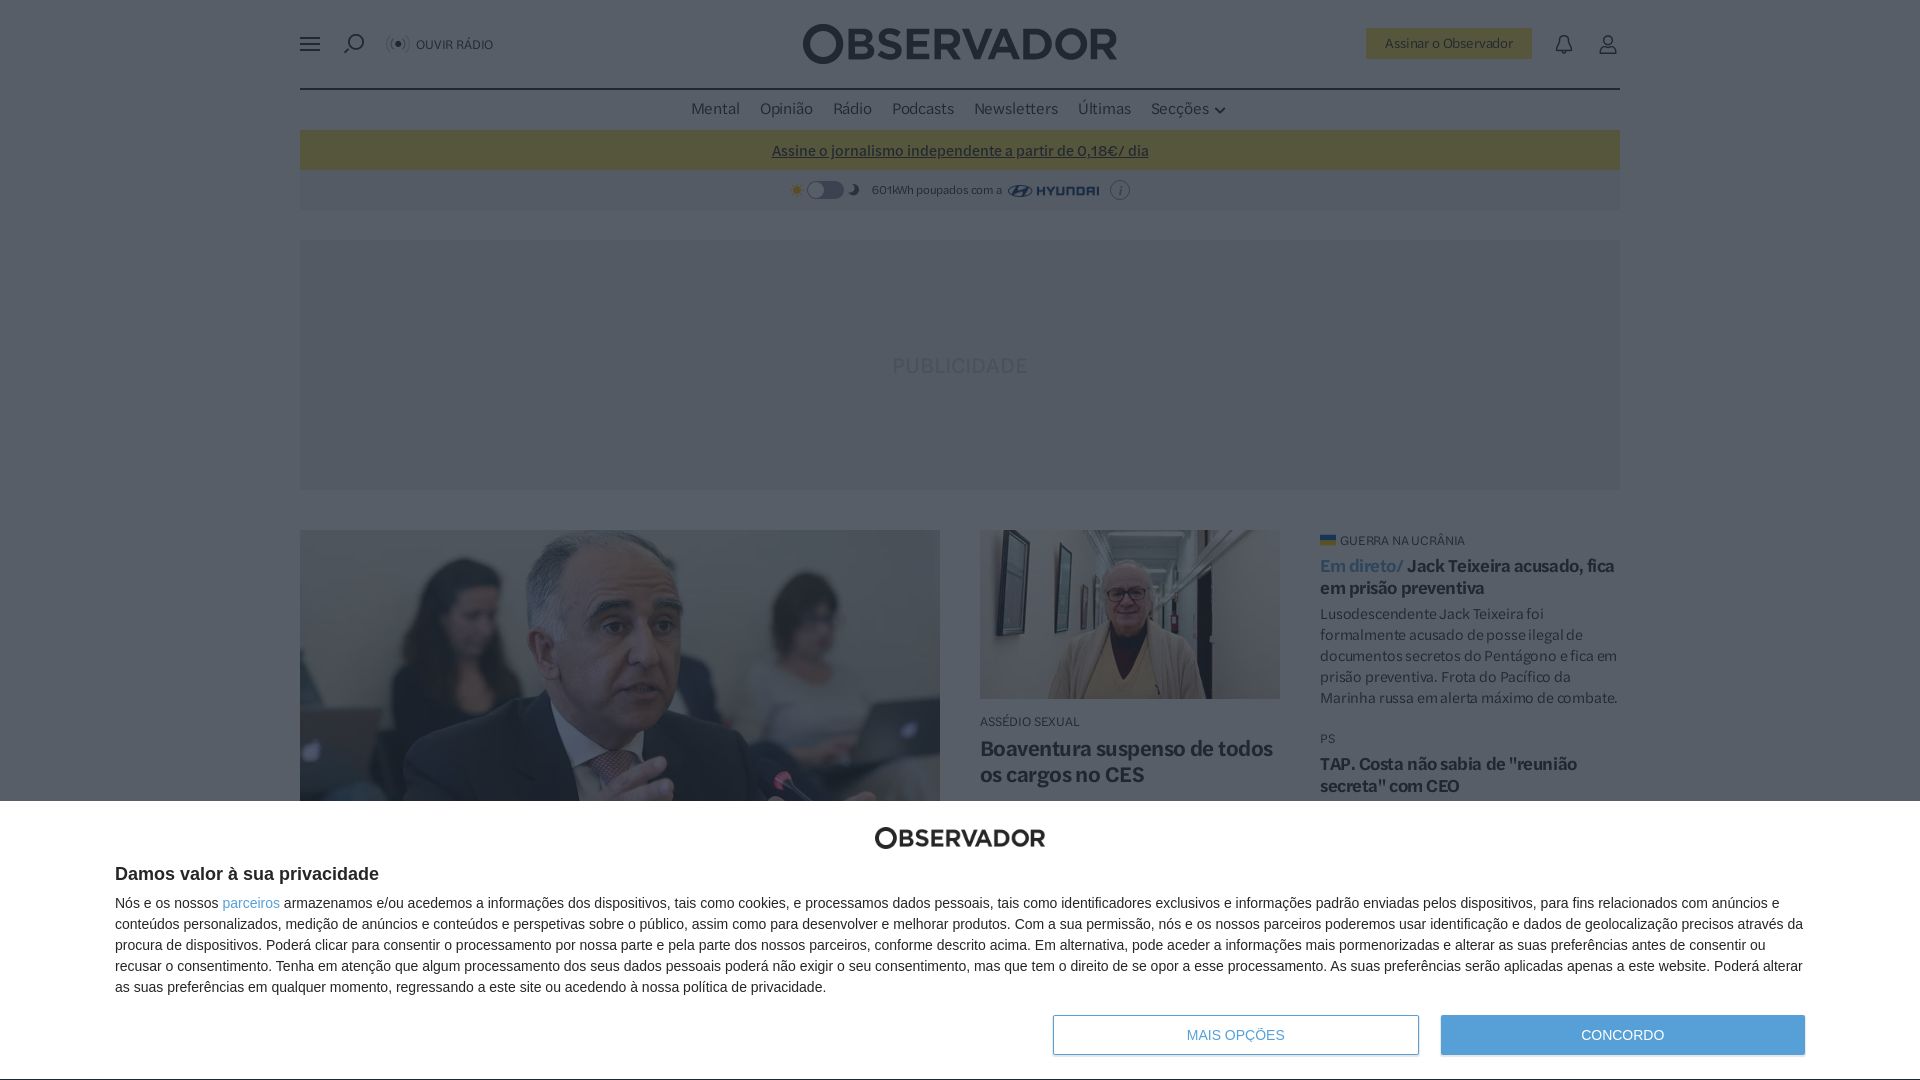 Stato del sito web observador.pt è   ONLINE